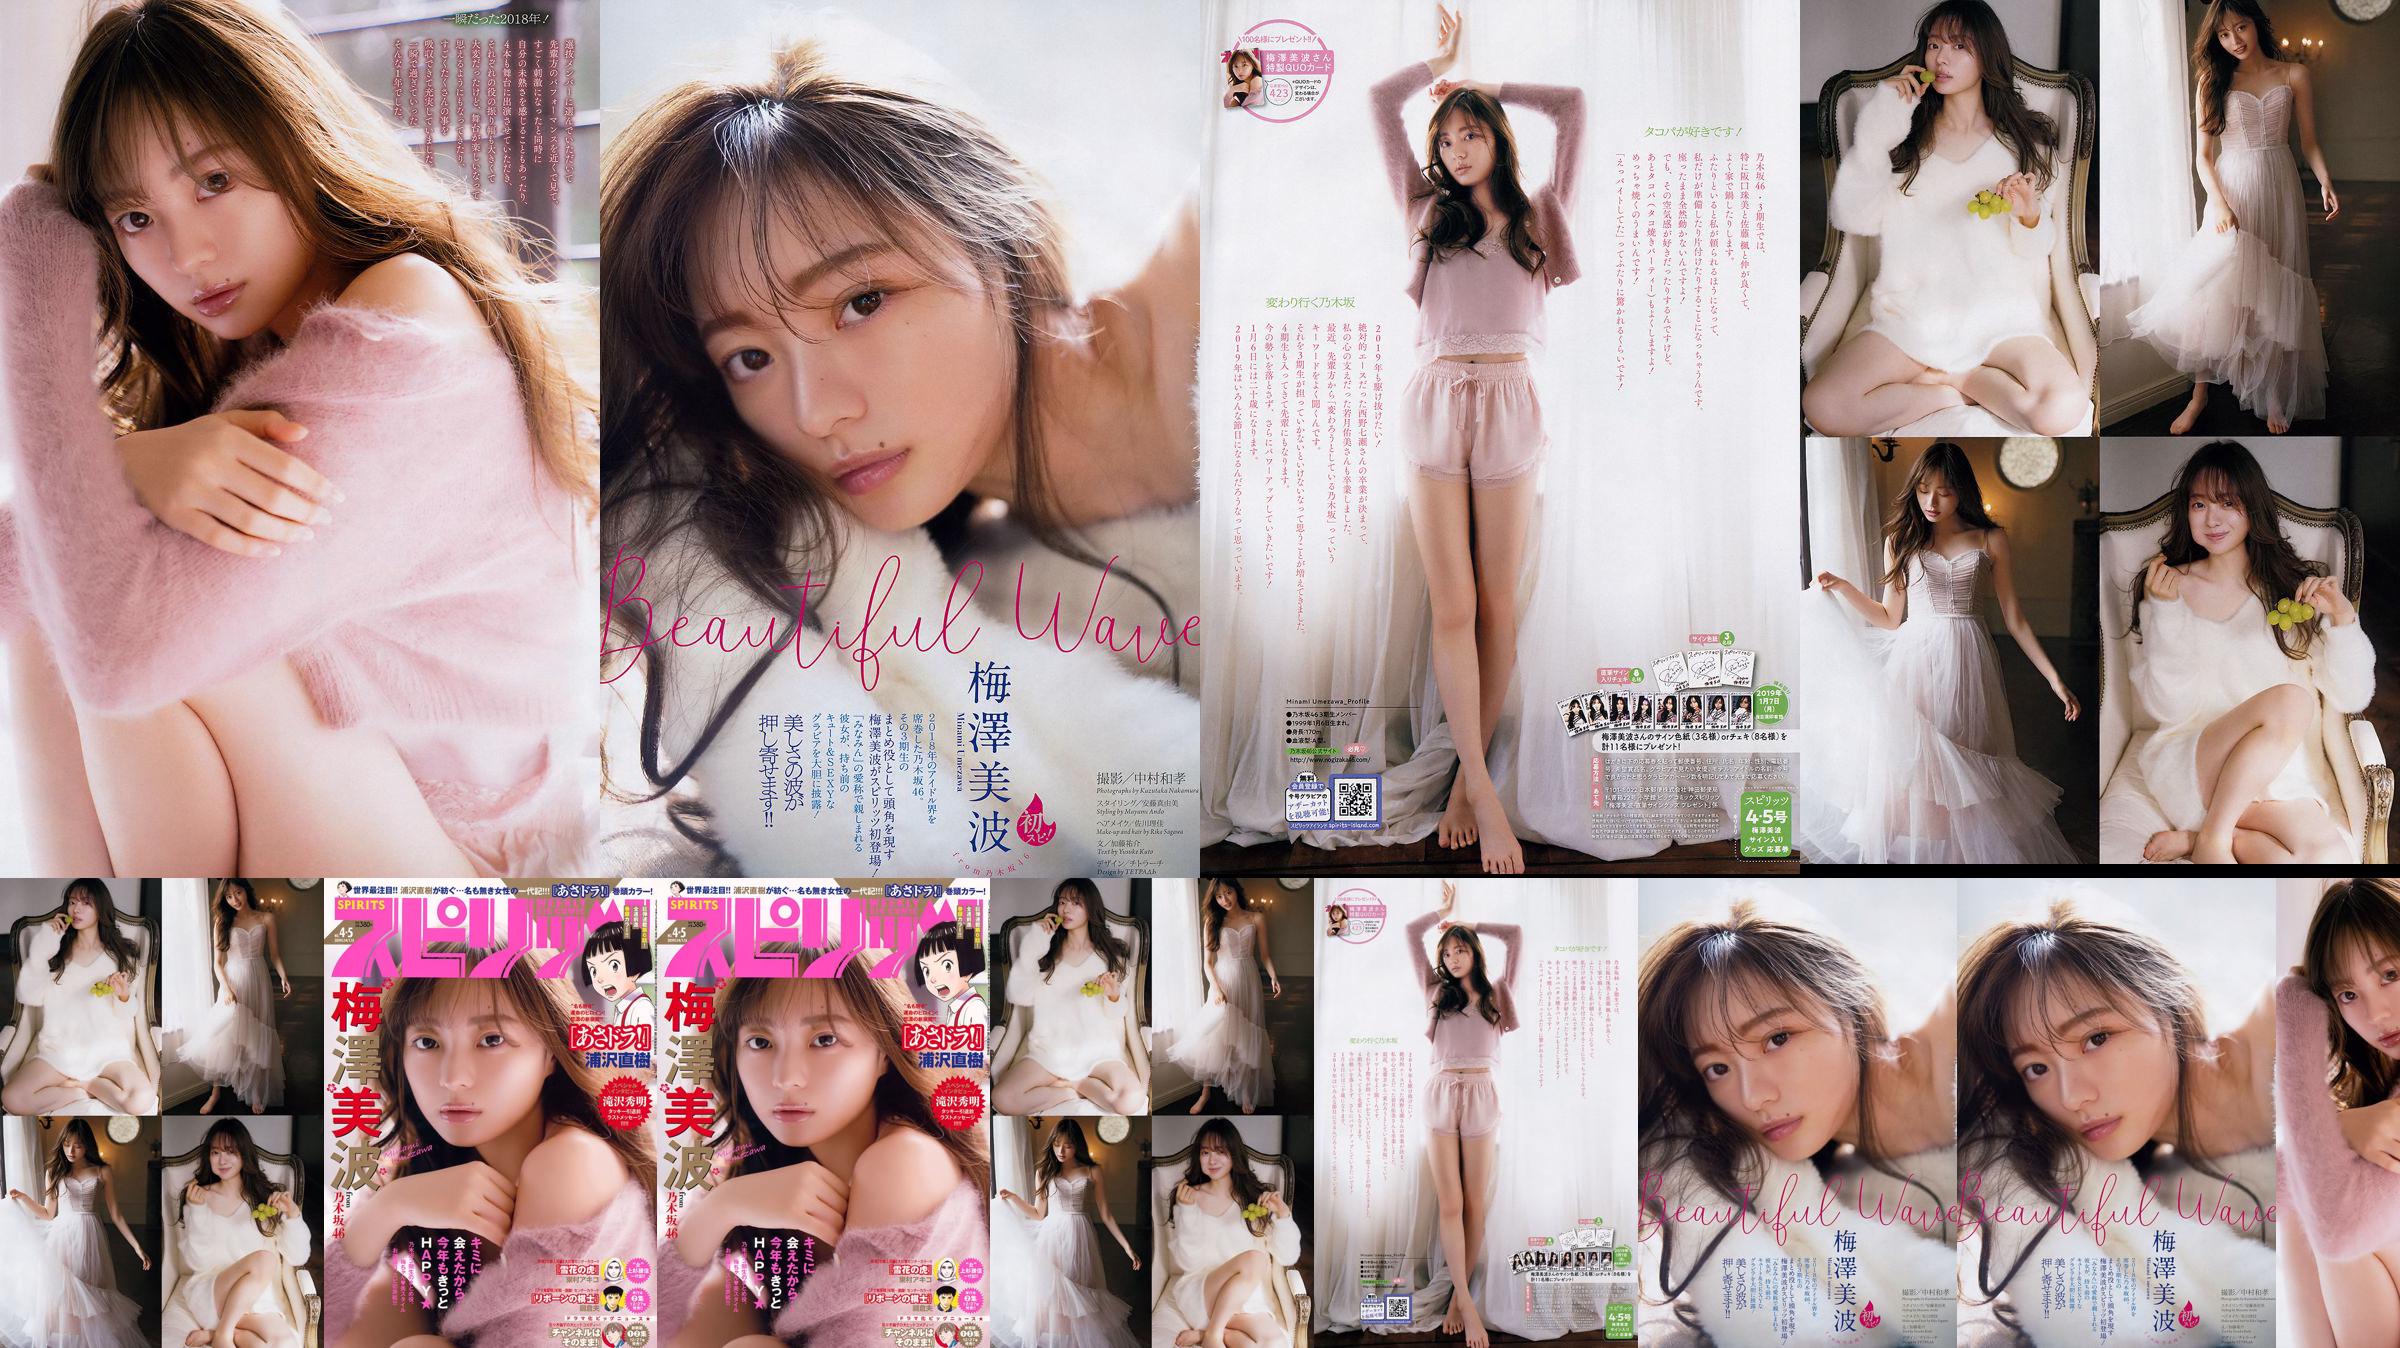 [Grands esprits de la bande dessinée hebdomadaire] Minami Umezawa 2019 N ° 04-05 Photo Magazine No.1ca697 Page 3